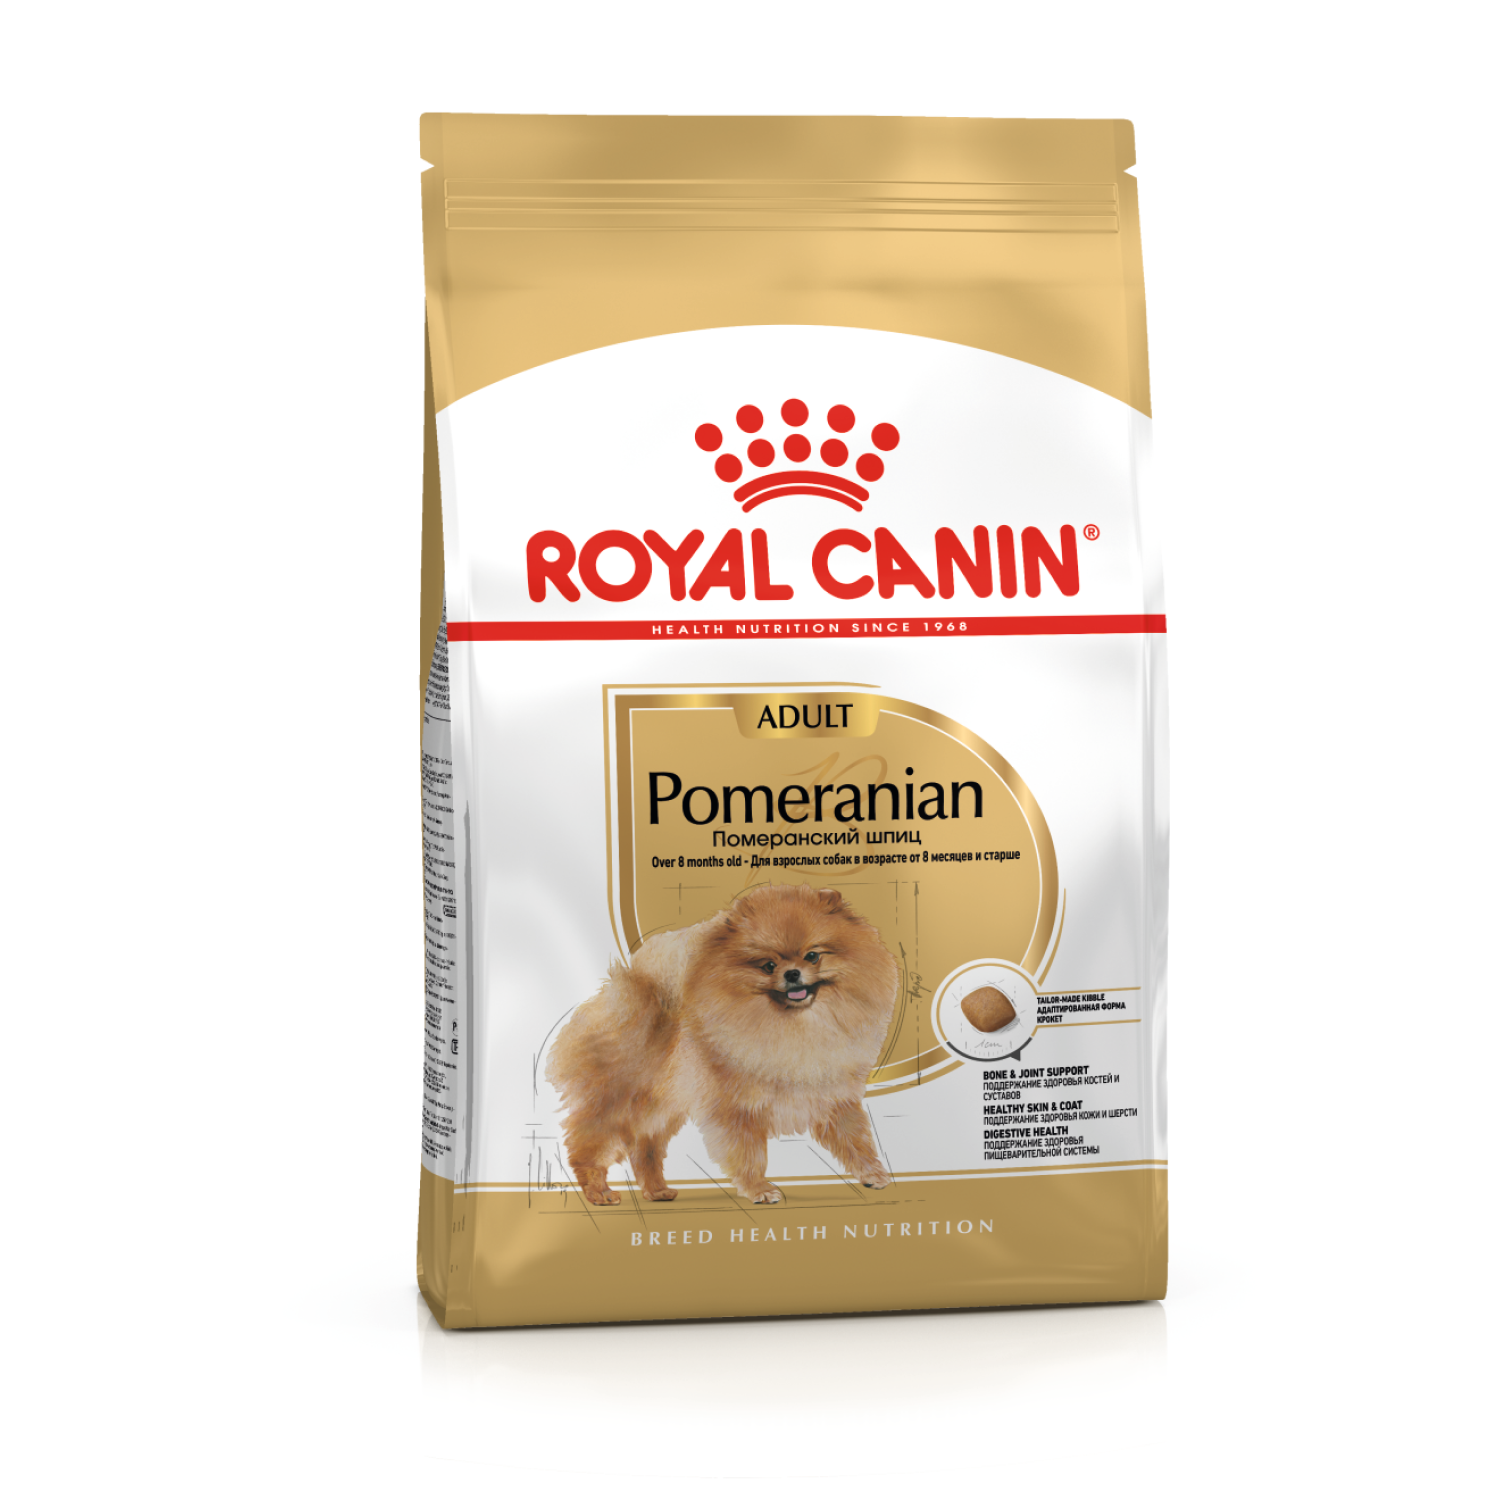 Сухой корм для собак Royal Canin Pomeranian Adult, для породы Померанский Шпиц 500 г  - купить